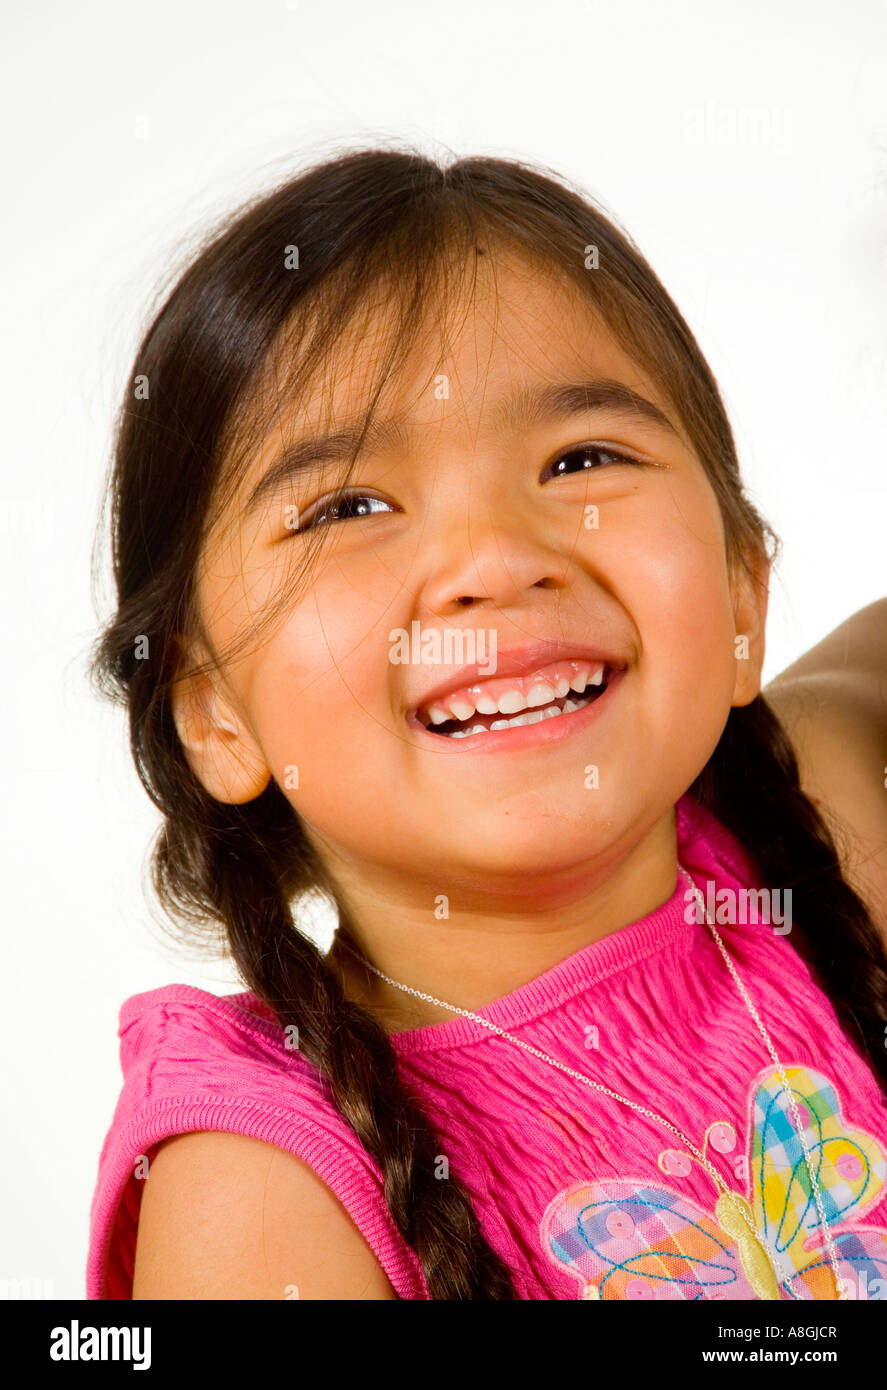 Ein fröhliches 4 jährige kalifornische chinesischen amerikanischen Mädchen Stockfoto